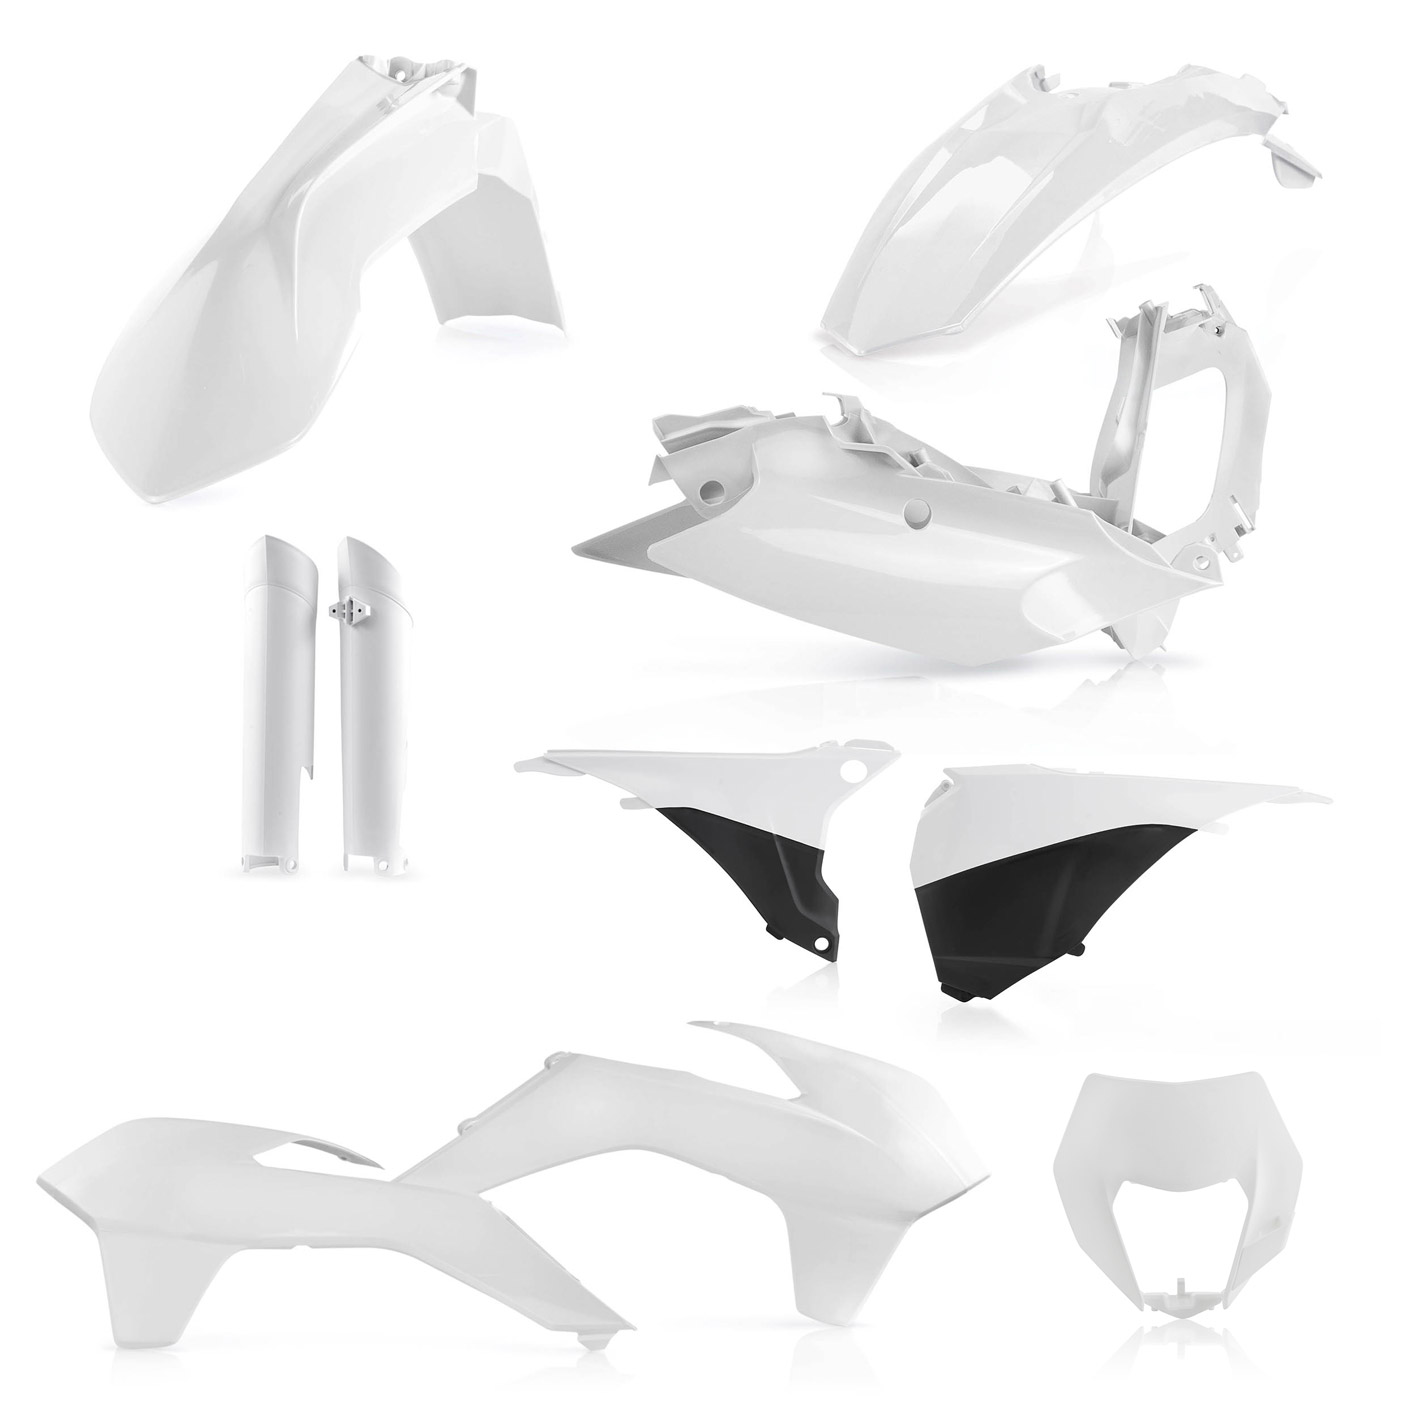 Plastikteile für deine KTM EXC und EXC-F in weiss. Bestehend aus Frontkotflügel, Heckkotflügel, Tankspoiler, Nummerntafel, Seitenteilen, Gabelschoner und Lampenmaske